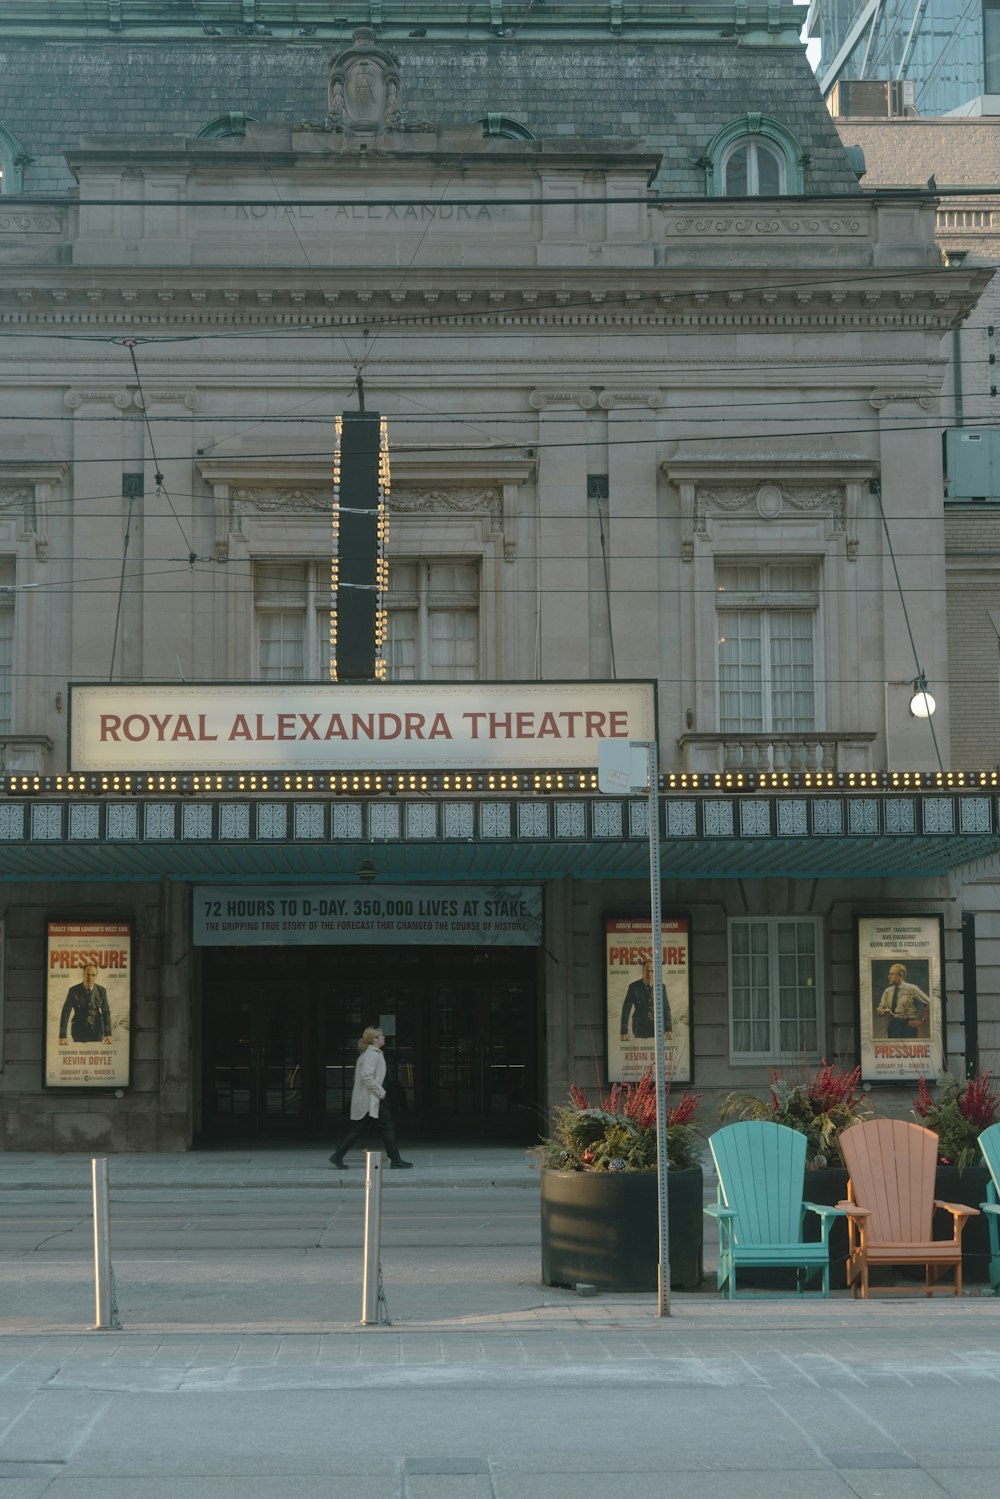 로얄 알렉산드리아 극장(Royal Alexandria Theatre)이라는 간판이 있는 건물